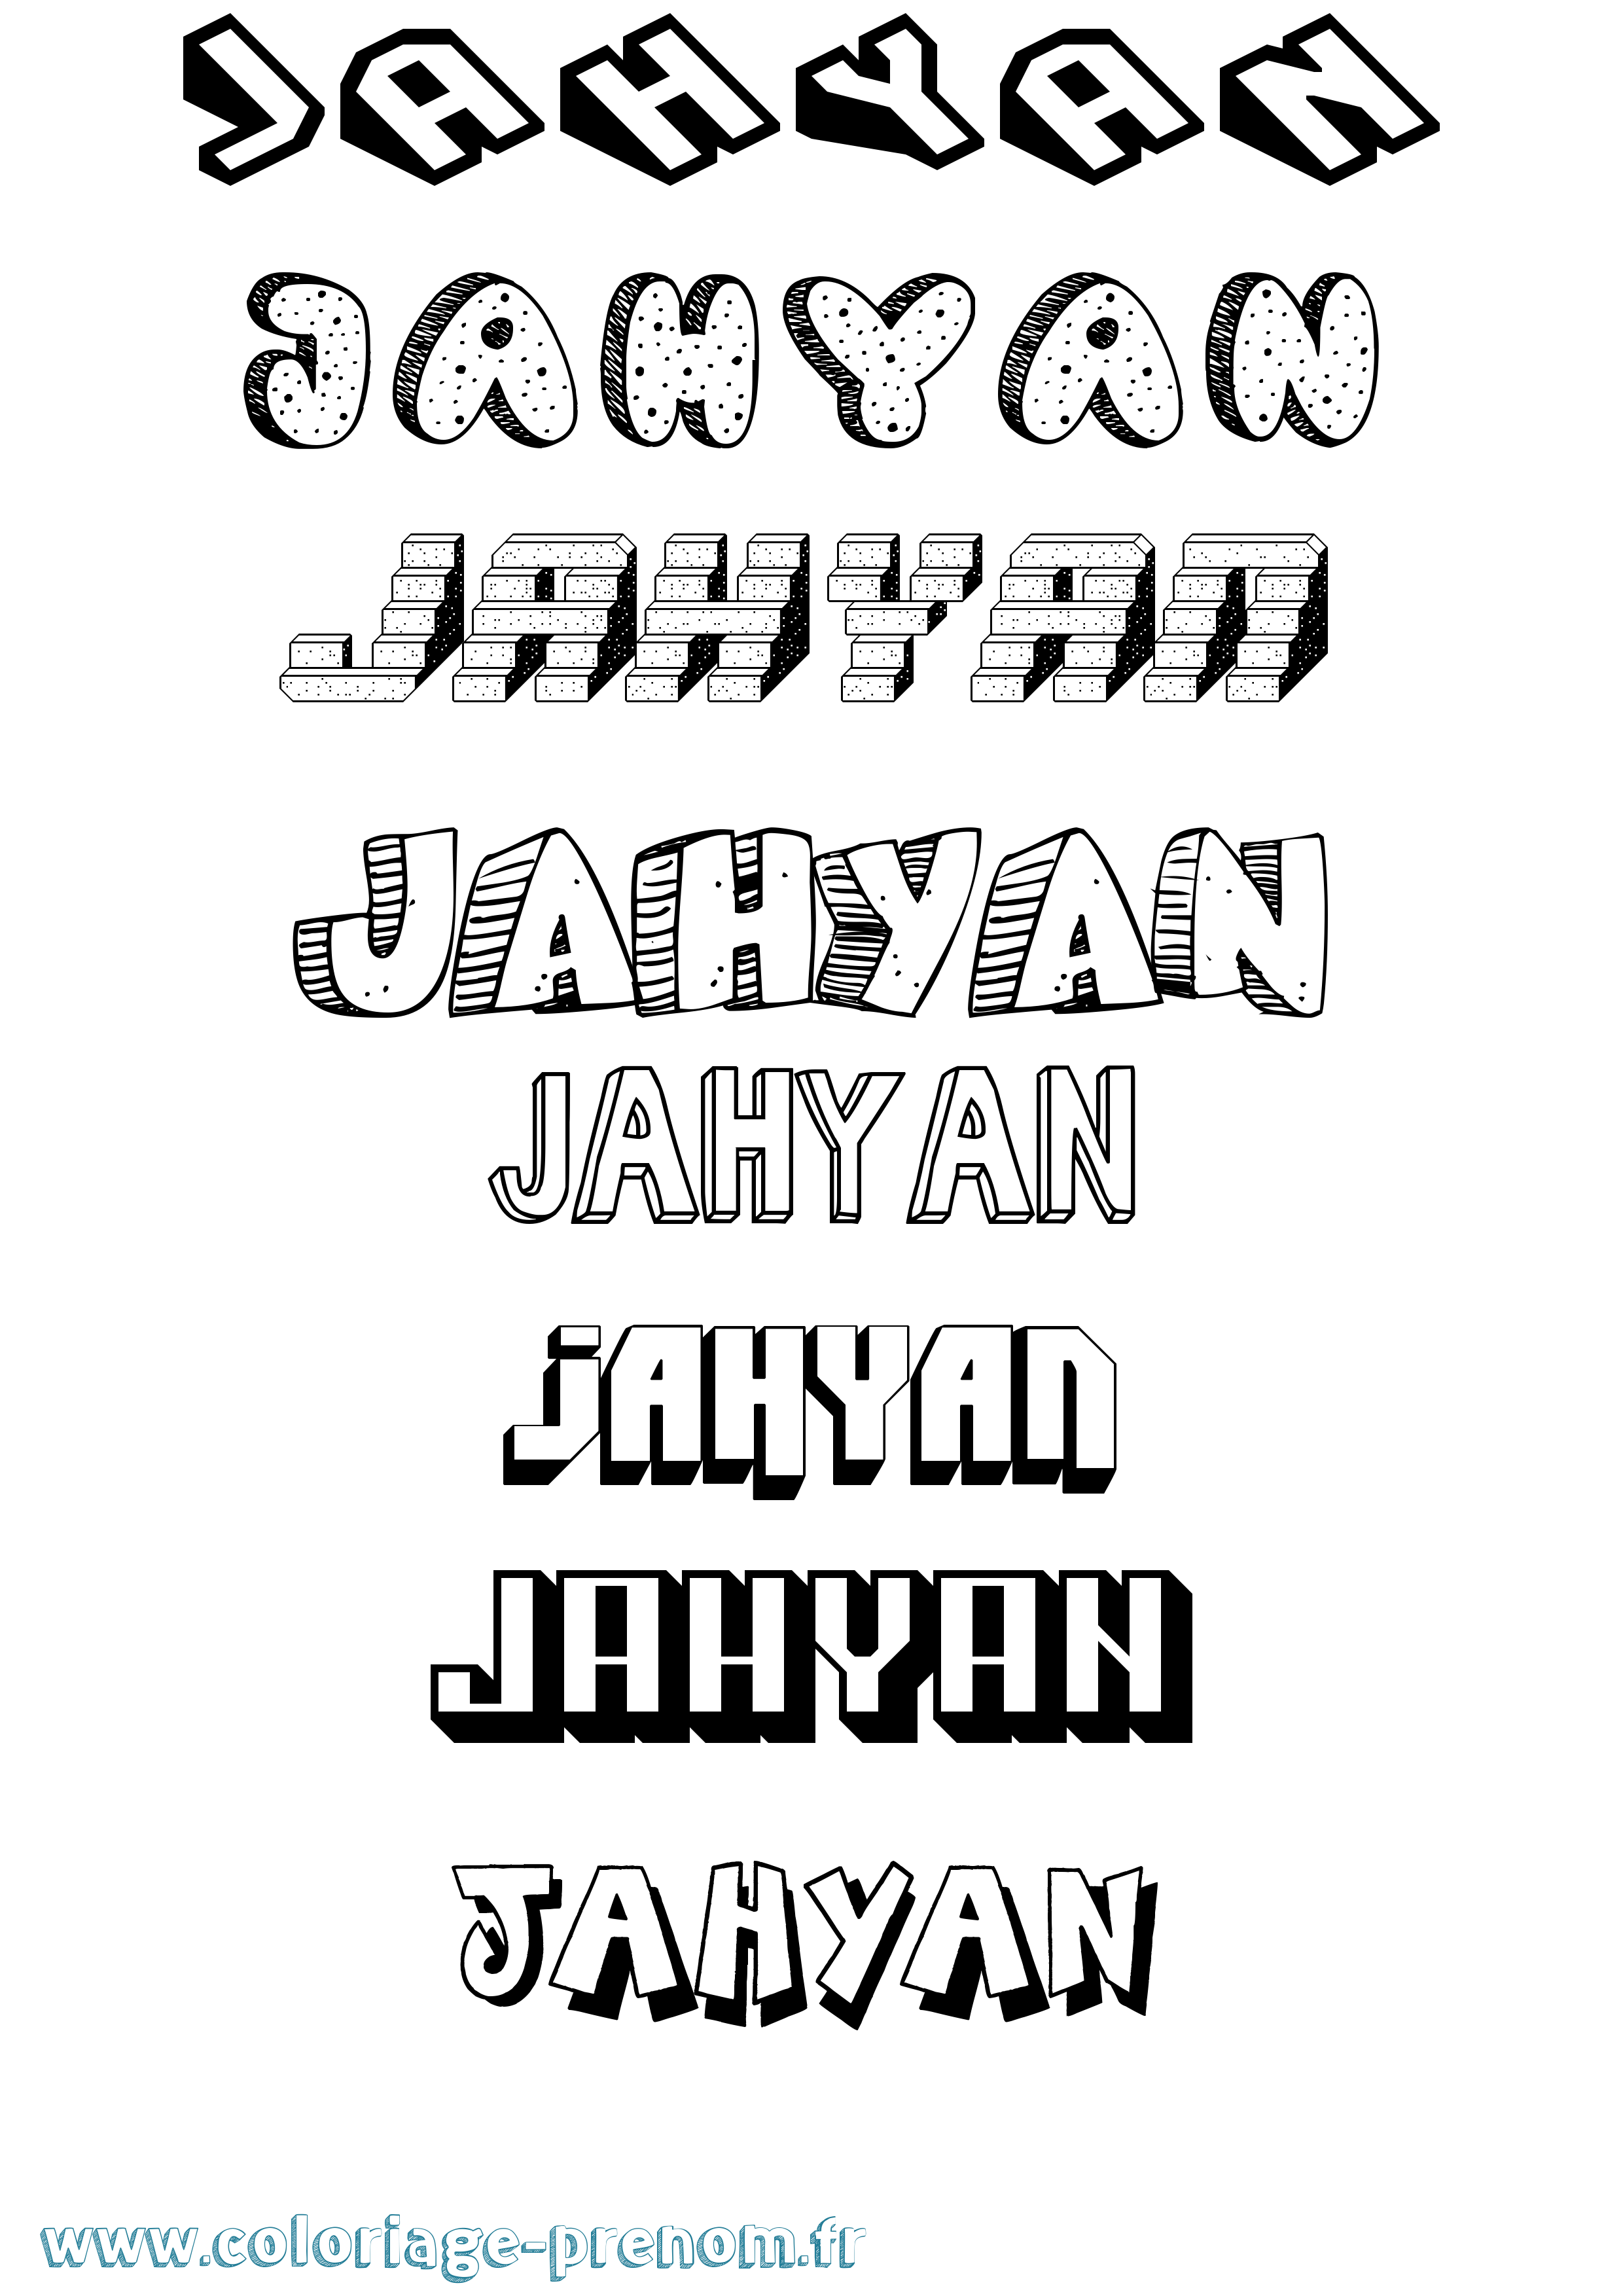 Coloriage prénom Jahyan Effet 3D